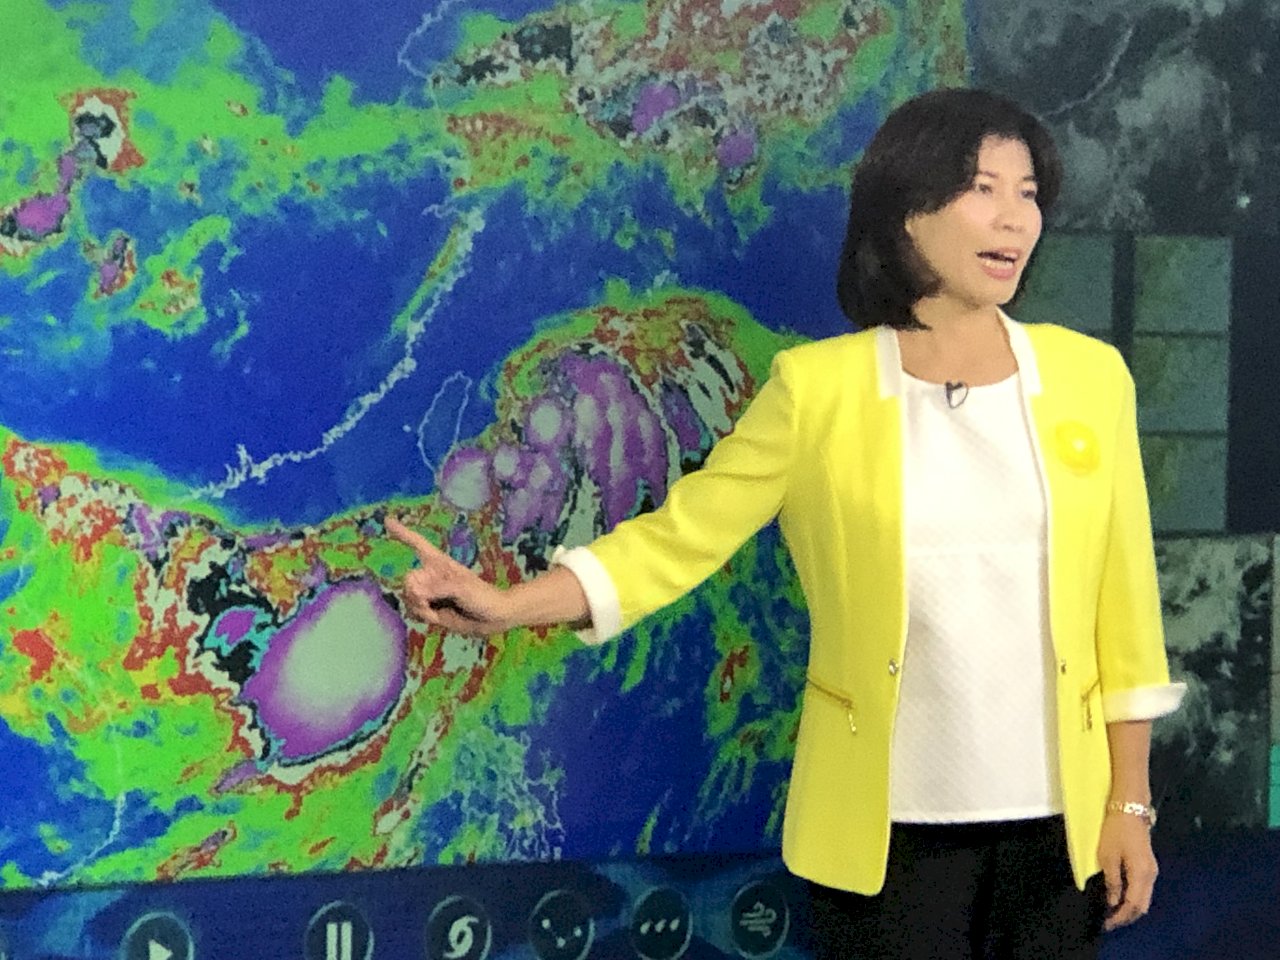 輕颱丹娜絲將撲日韓 氣象局估今夜解除海警